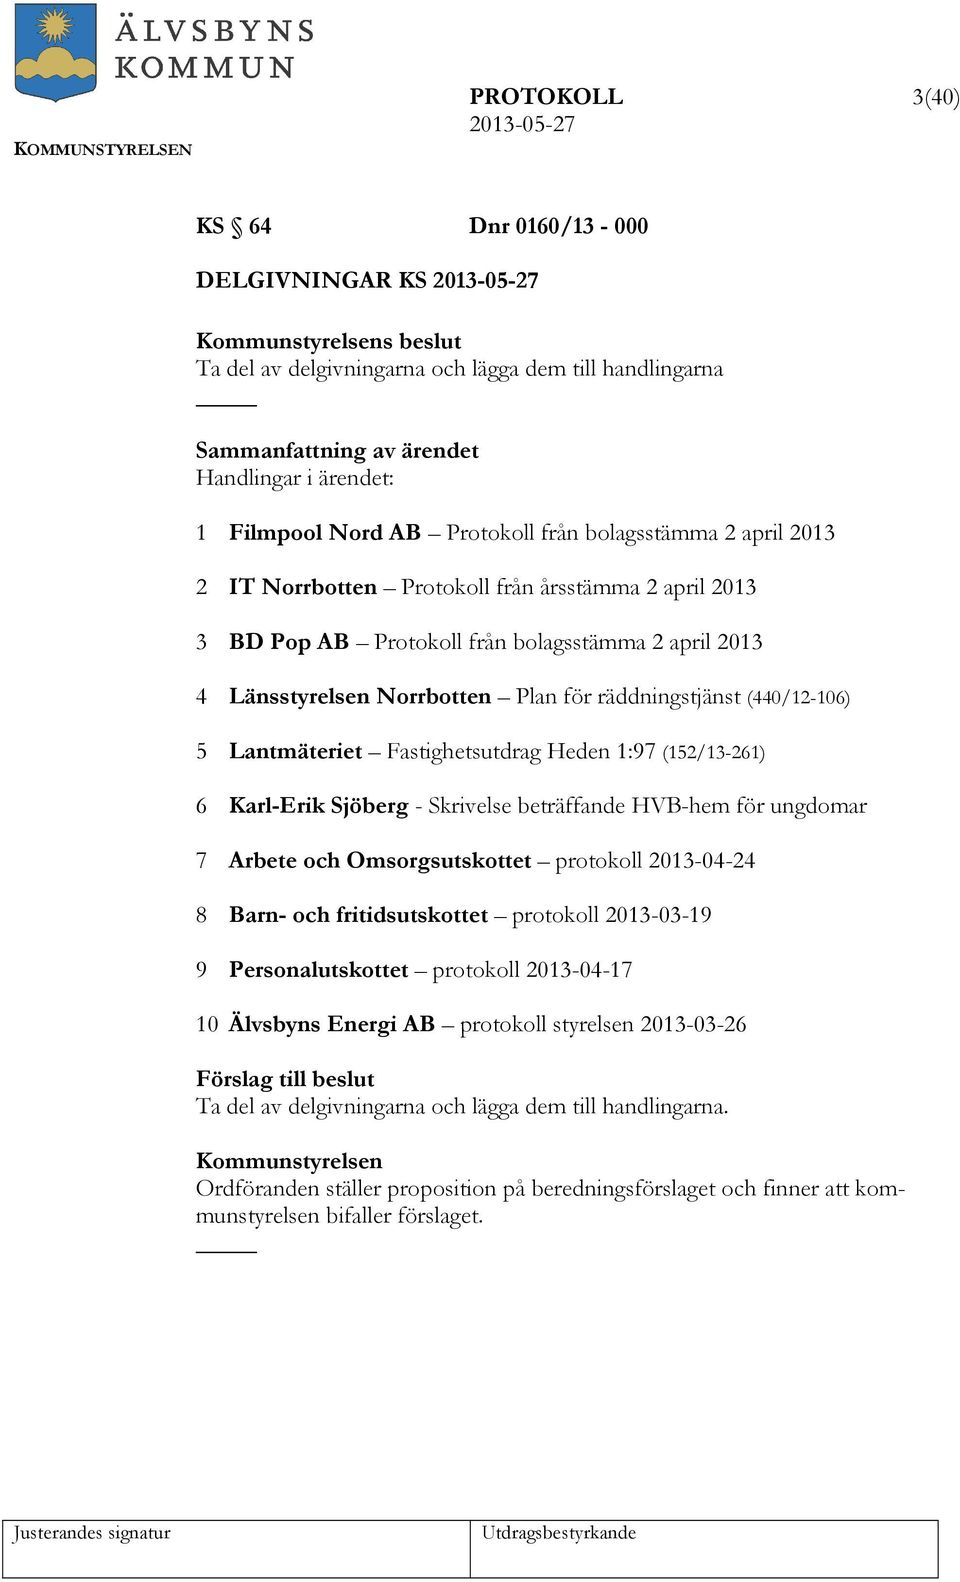 Fastighetsutdrag Heden 1:97 (152/13-261) 6 Karl-Erik Sjöberg - Skrivelse beträffande HVB-hem för ungdomar 7 Arbete och Omsorgsutskottet protokoll 2013-04-24 8 Barn- och fritidsutskottet protokoll